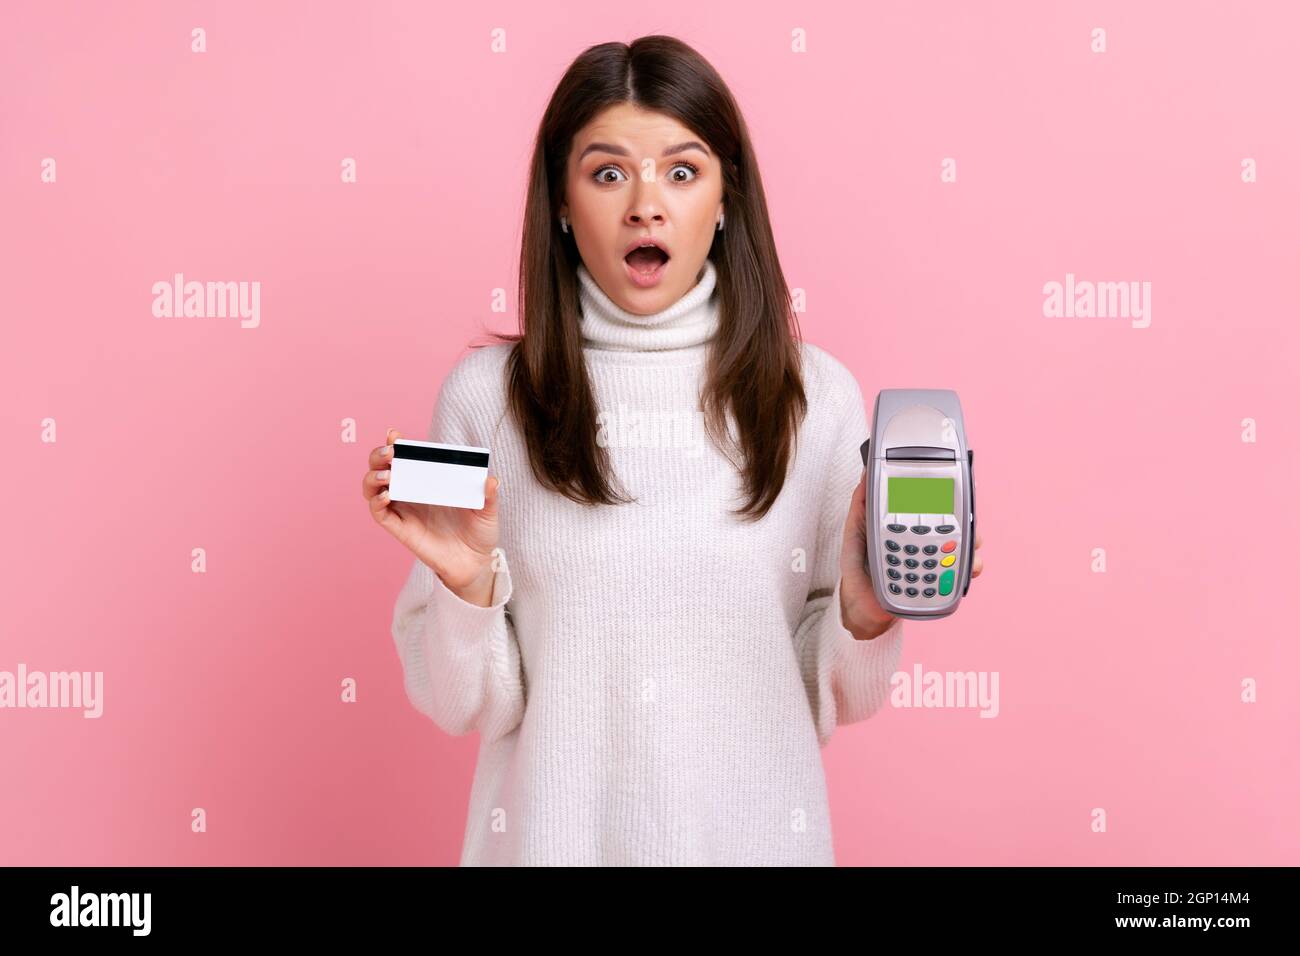 Erstaunt Frau zeigt POS Zahlungsterminal und Kredit-oder Debitkarte, mit bargeldlosen Zahlungen, nfc, trägt weißen lässigen Stil Pullover. Innenaufnahme des Studios isoliert auf rosa Hintergrund. Stockfoto